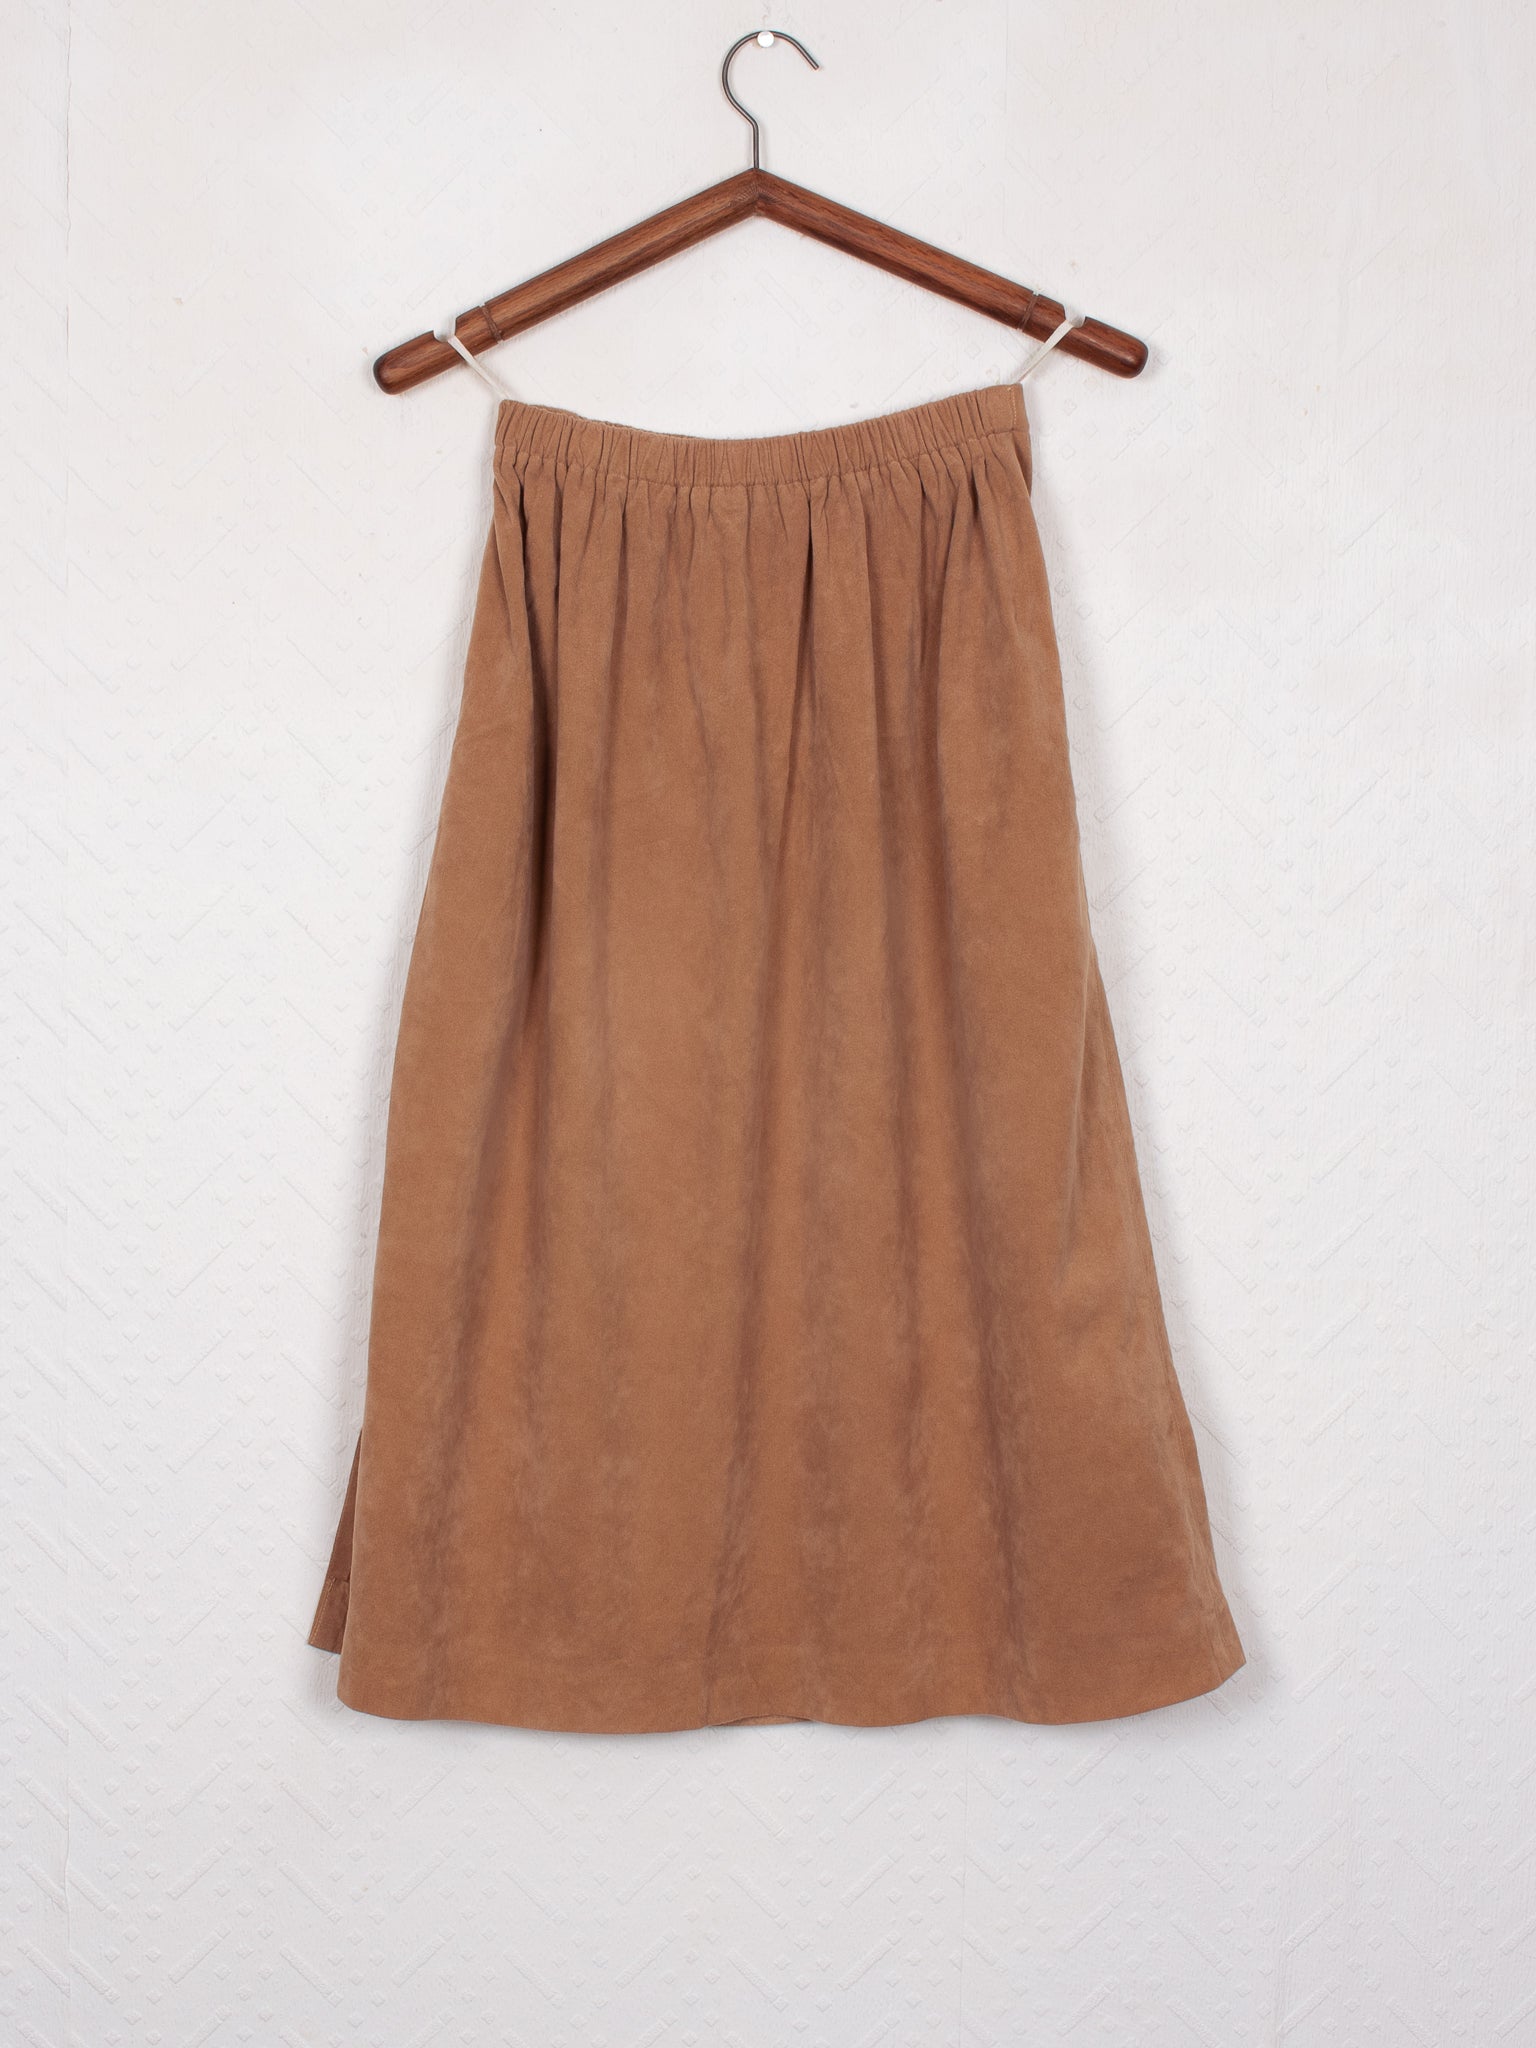 skirts shorts & dresses 70s Ultrasuede Skirt - W28